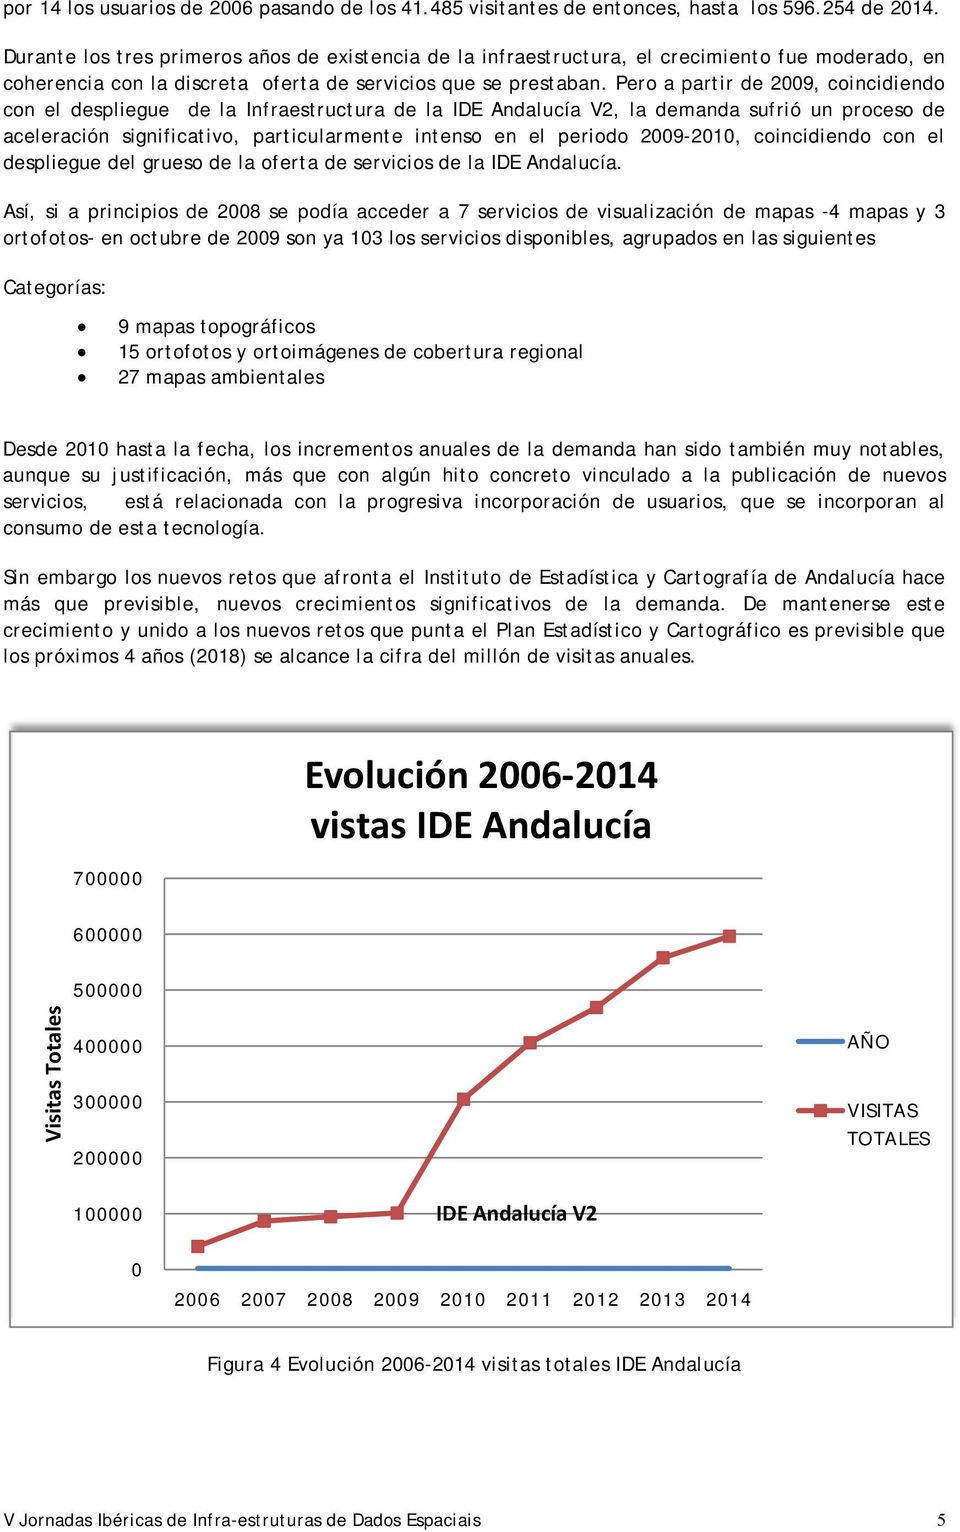 Pero a partir de 2009, coincidiendo con el despliegue de la Infraestructura de la IDE Andalucía V2, la demanda sufrió un proceso de aceleración significativo, particularmente intenso en el periodo